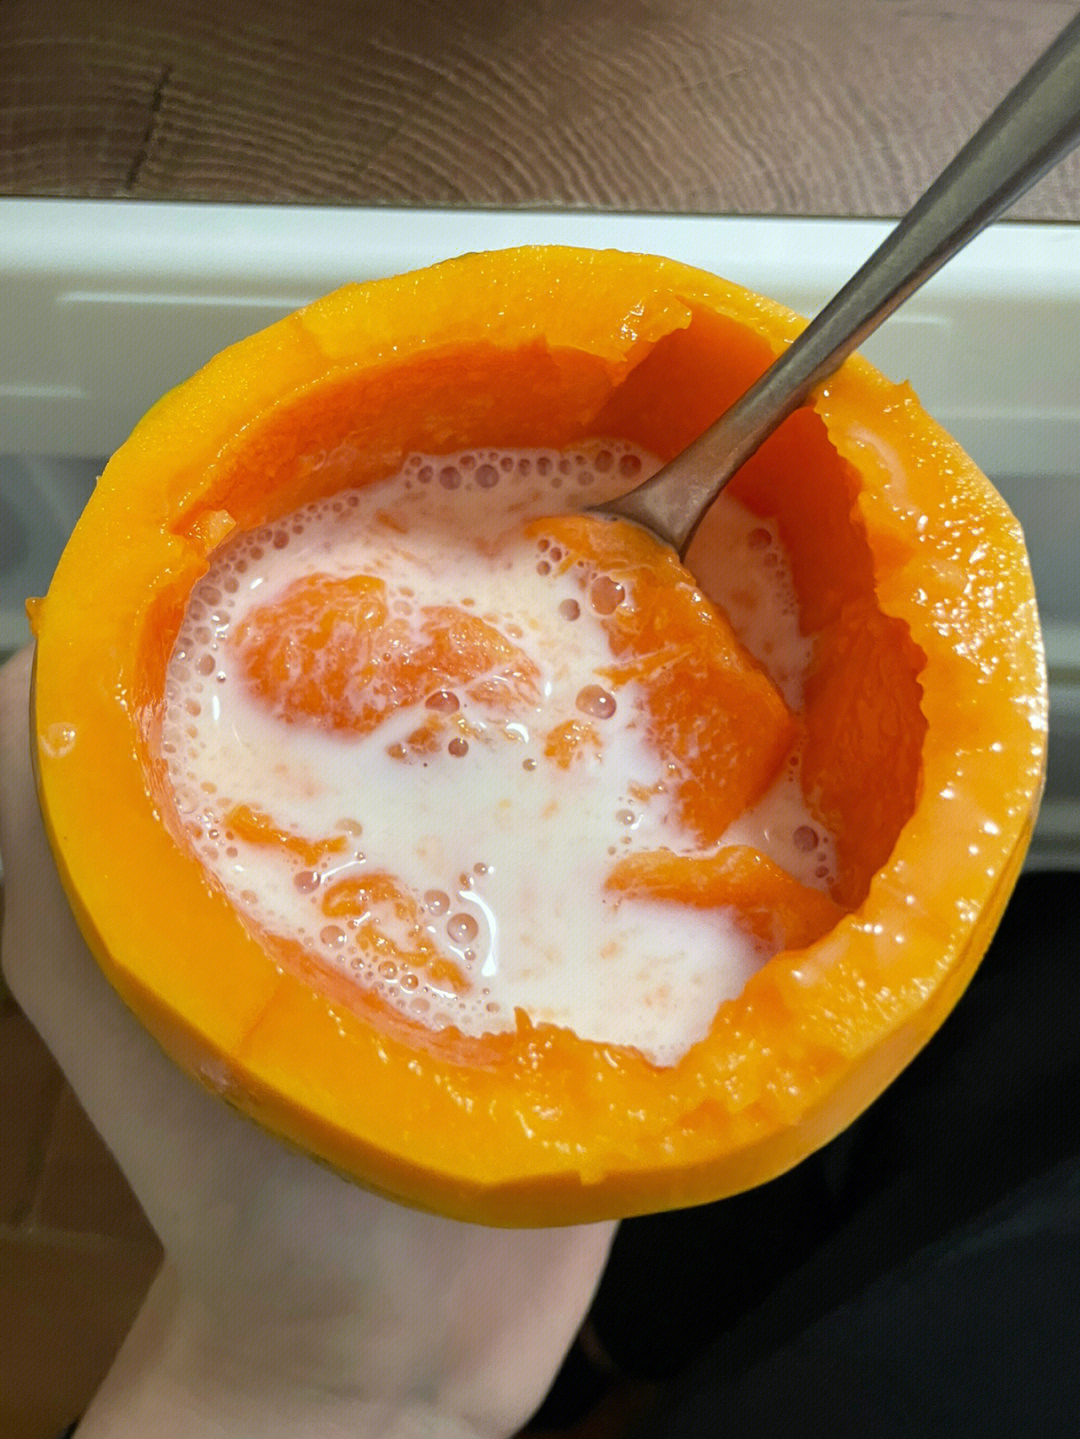 木瓜牛奶煮法图片